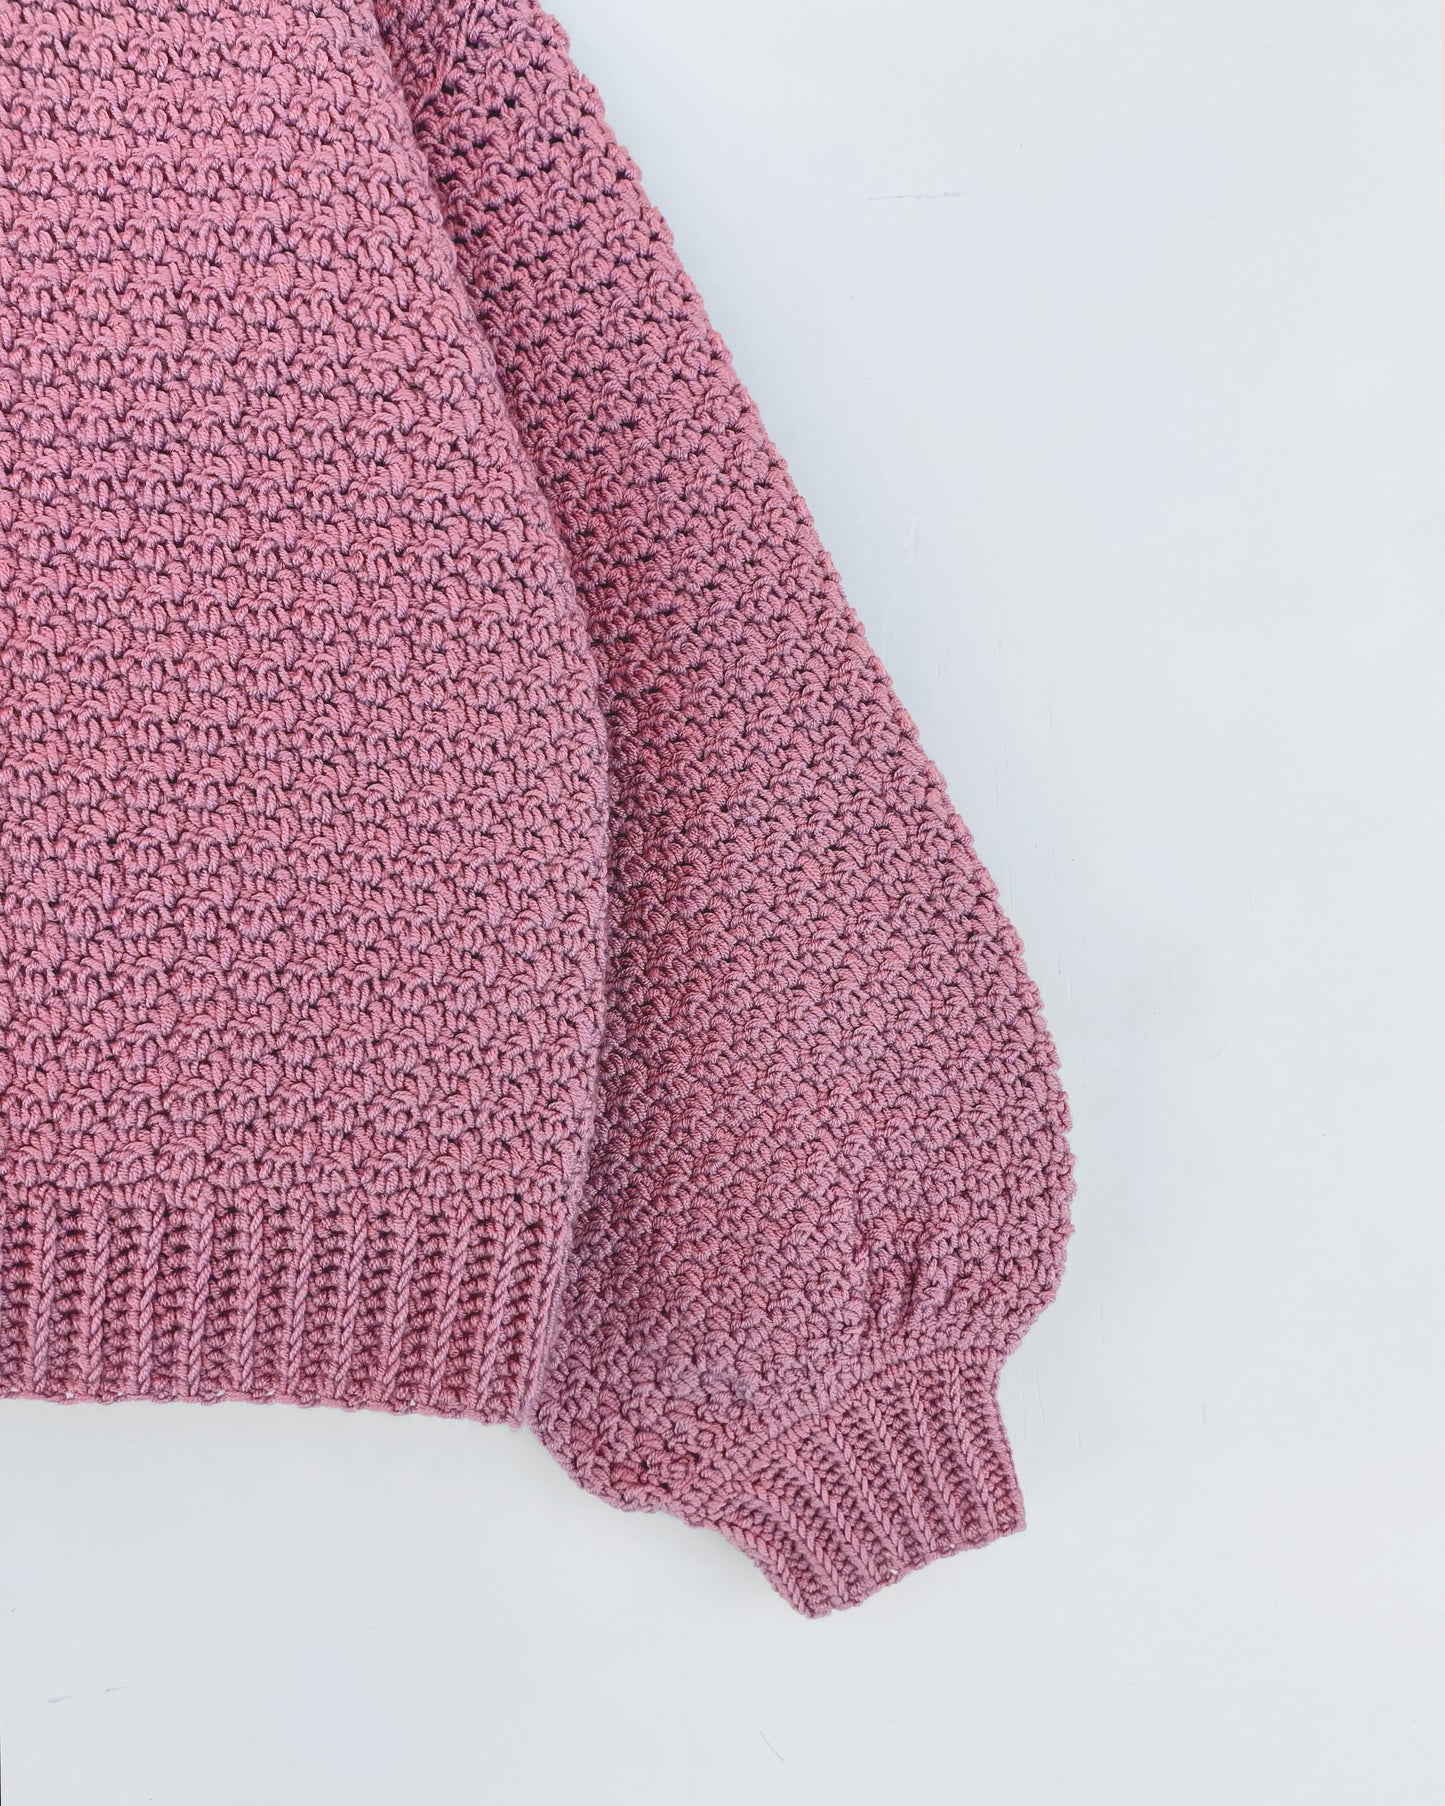 Kids' Cardigan No.1 | Easy crochet pattern